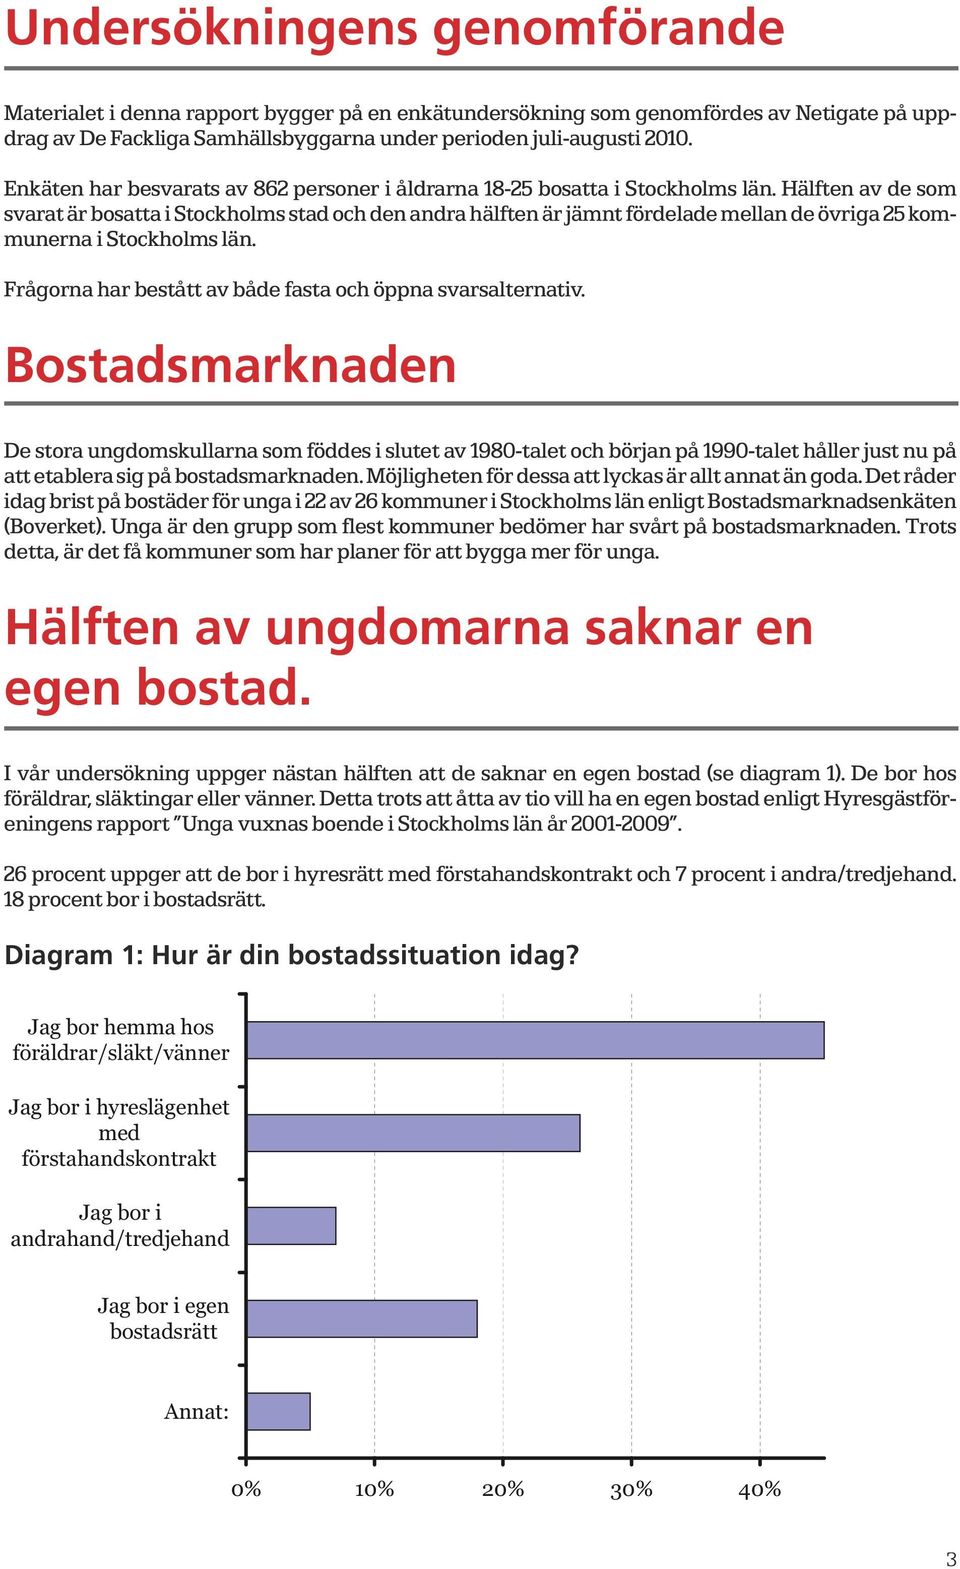 Hälften av de som svarat är bosatta i Stockholms stad och den andra hälften är jämnt fördelade mellan de övriga 25 kommunerna i Stockholms län.